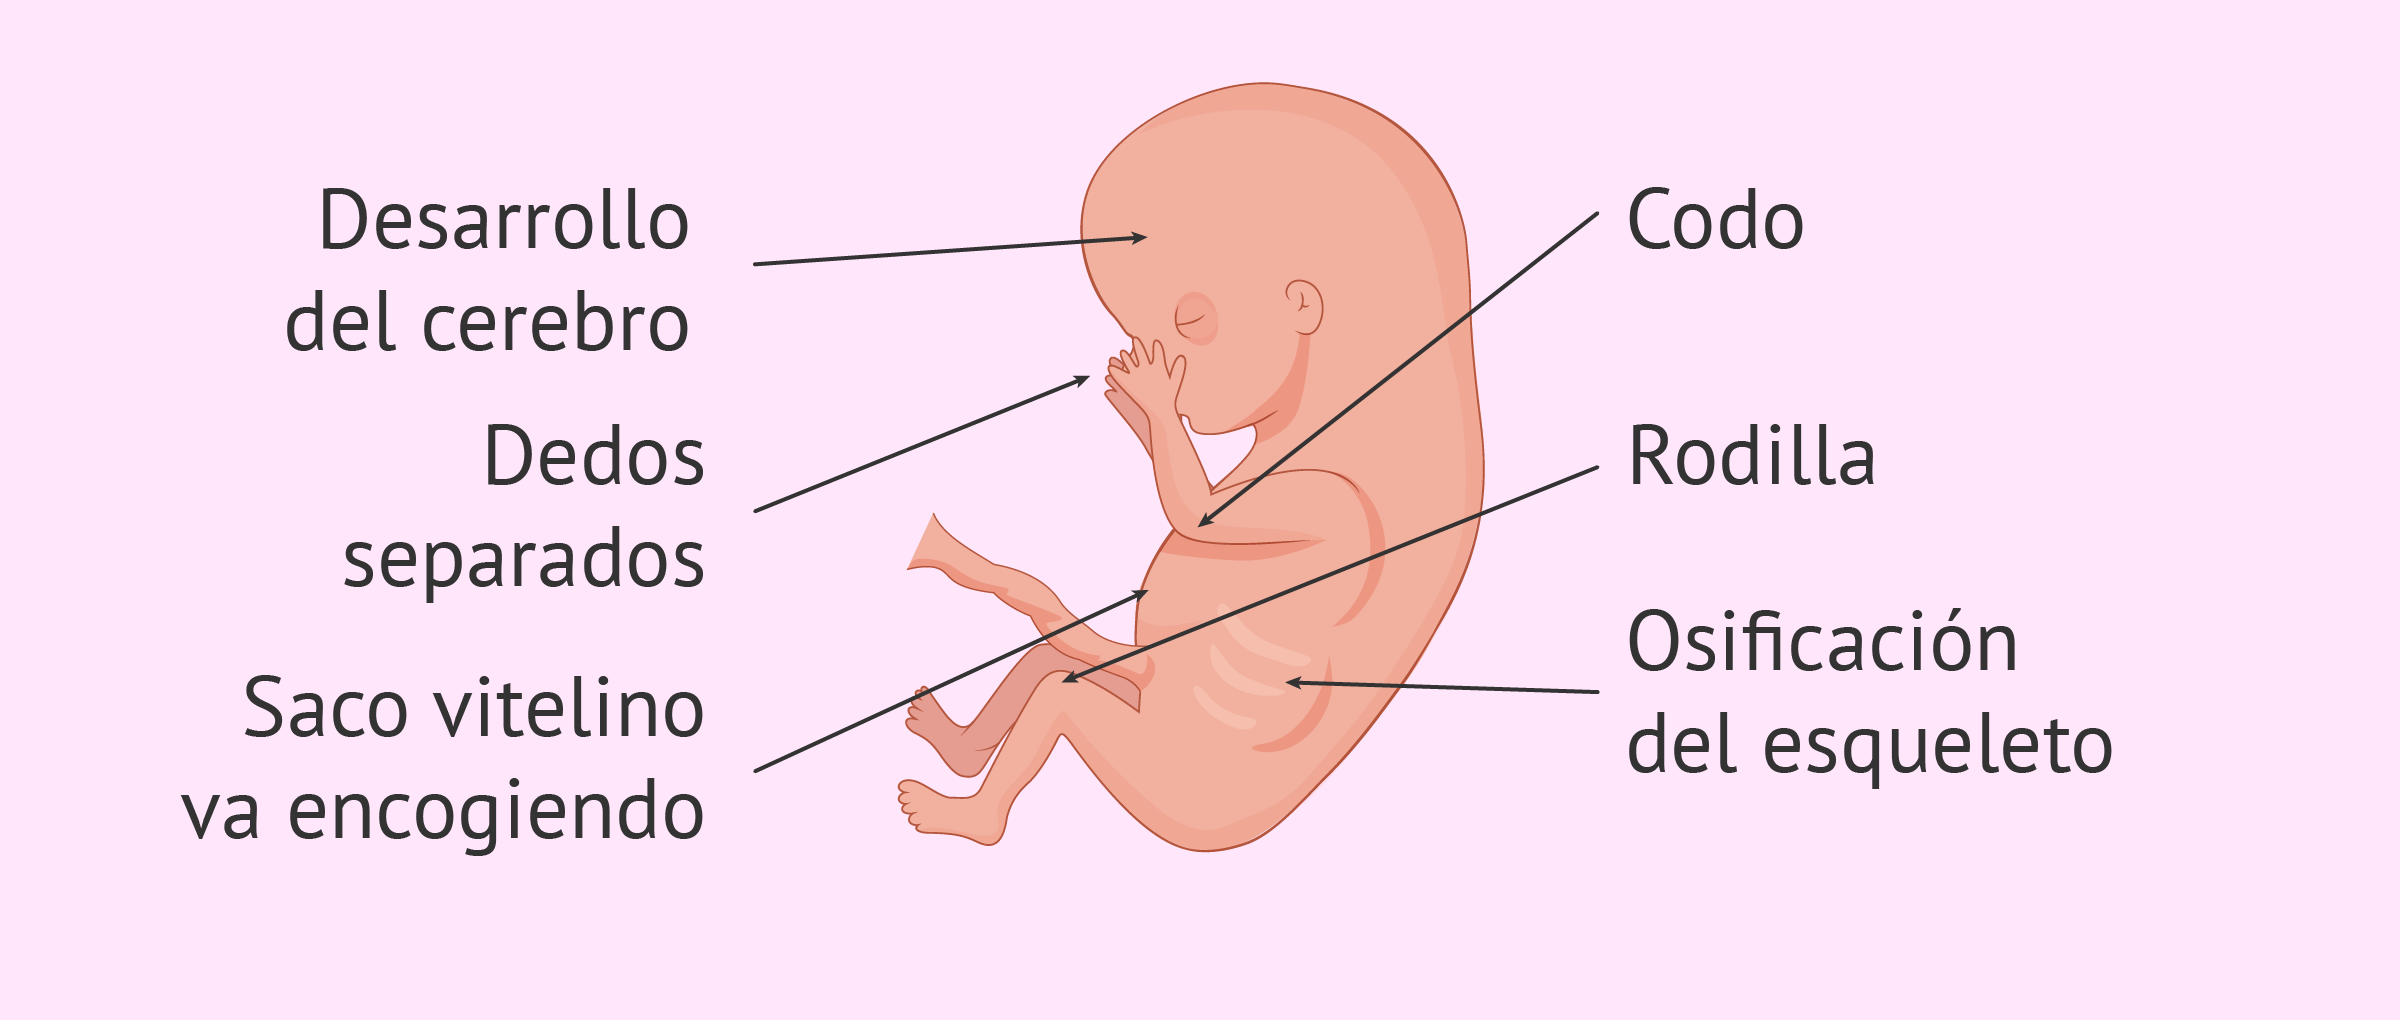 Bajar director cuero Semana 10 de embarazo: el feto empieza a moverse